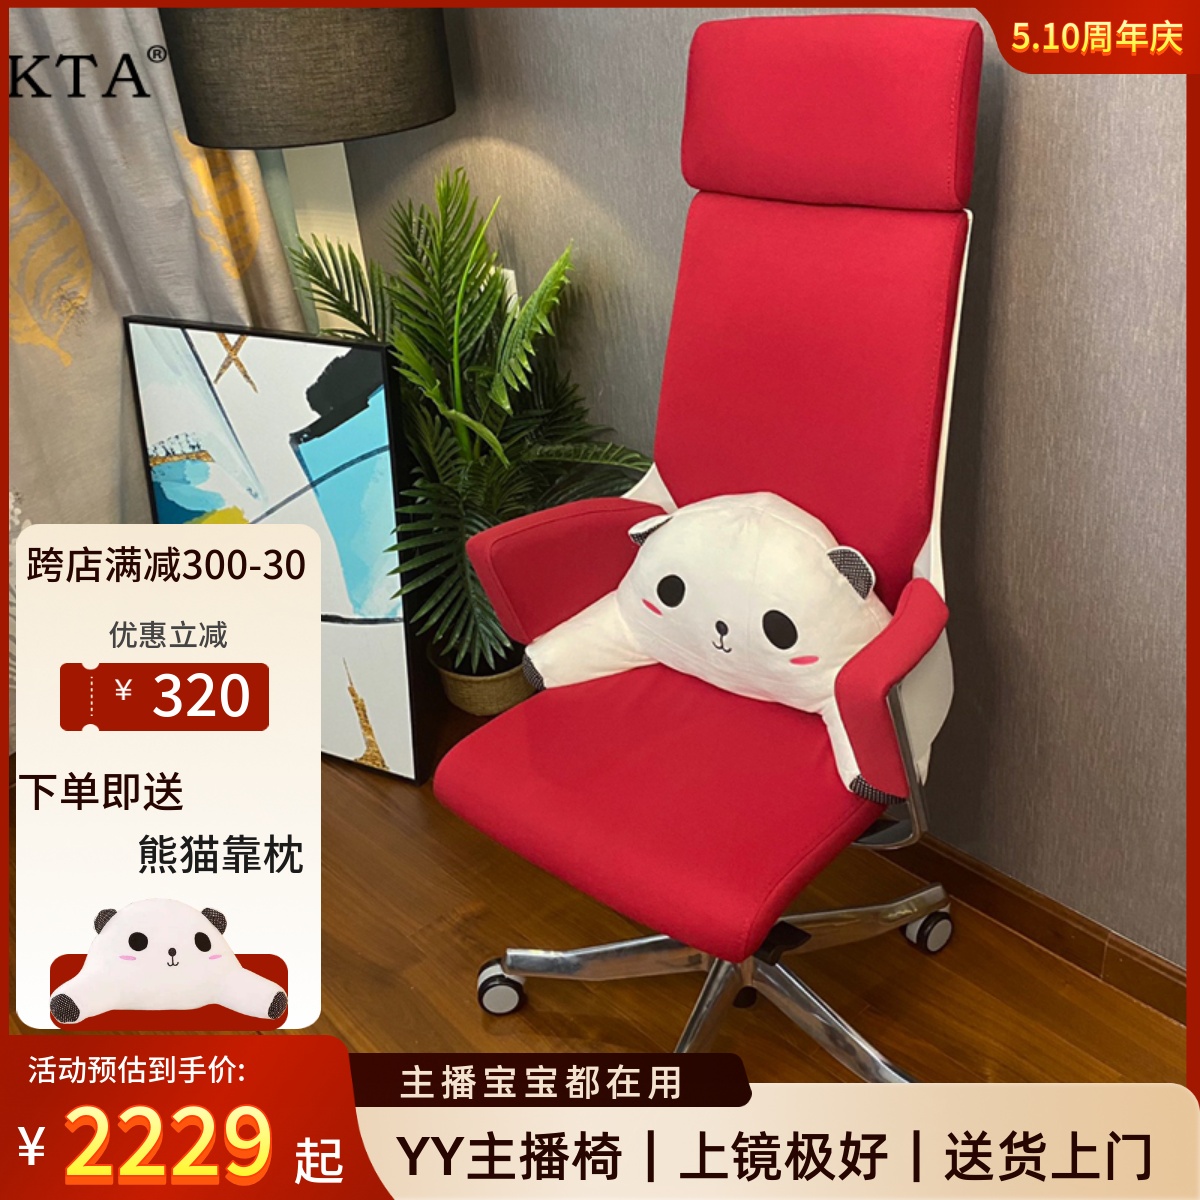 进口YY主播椅子韩明星同款正品网红直播座椅电脑椅办公椅久坐舒适